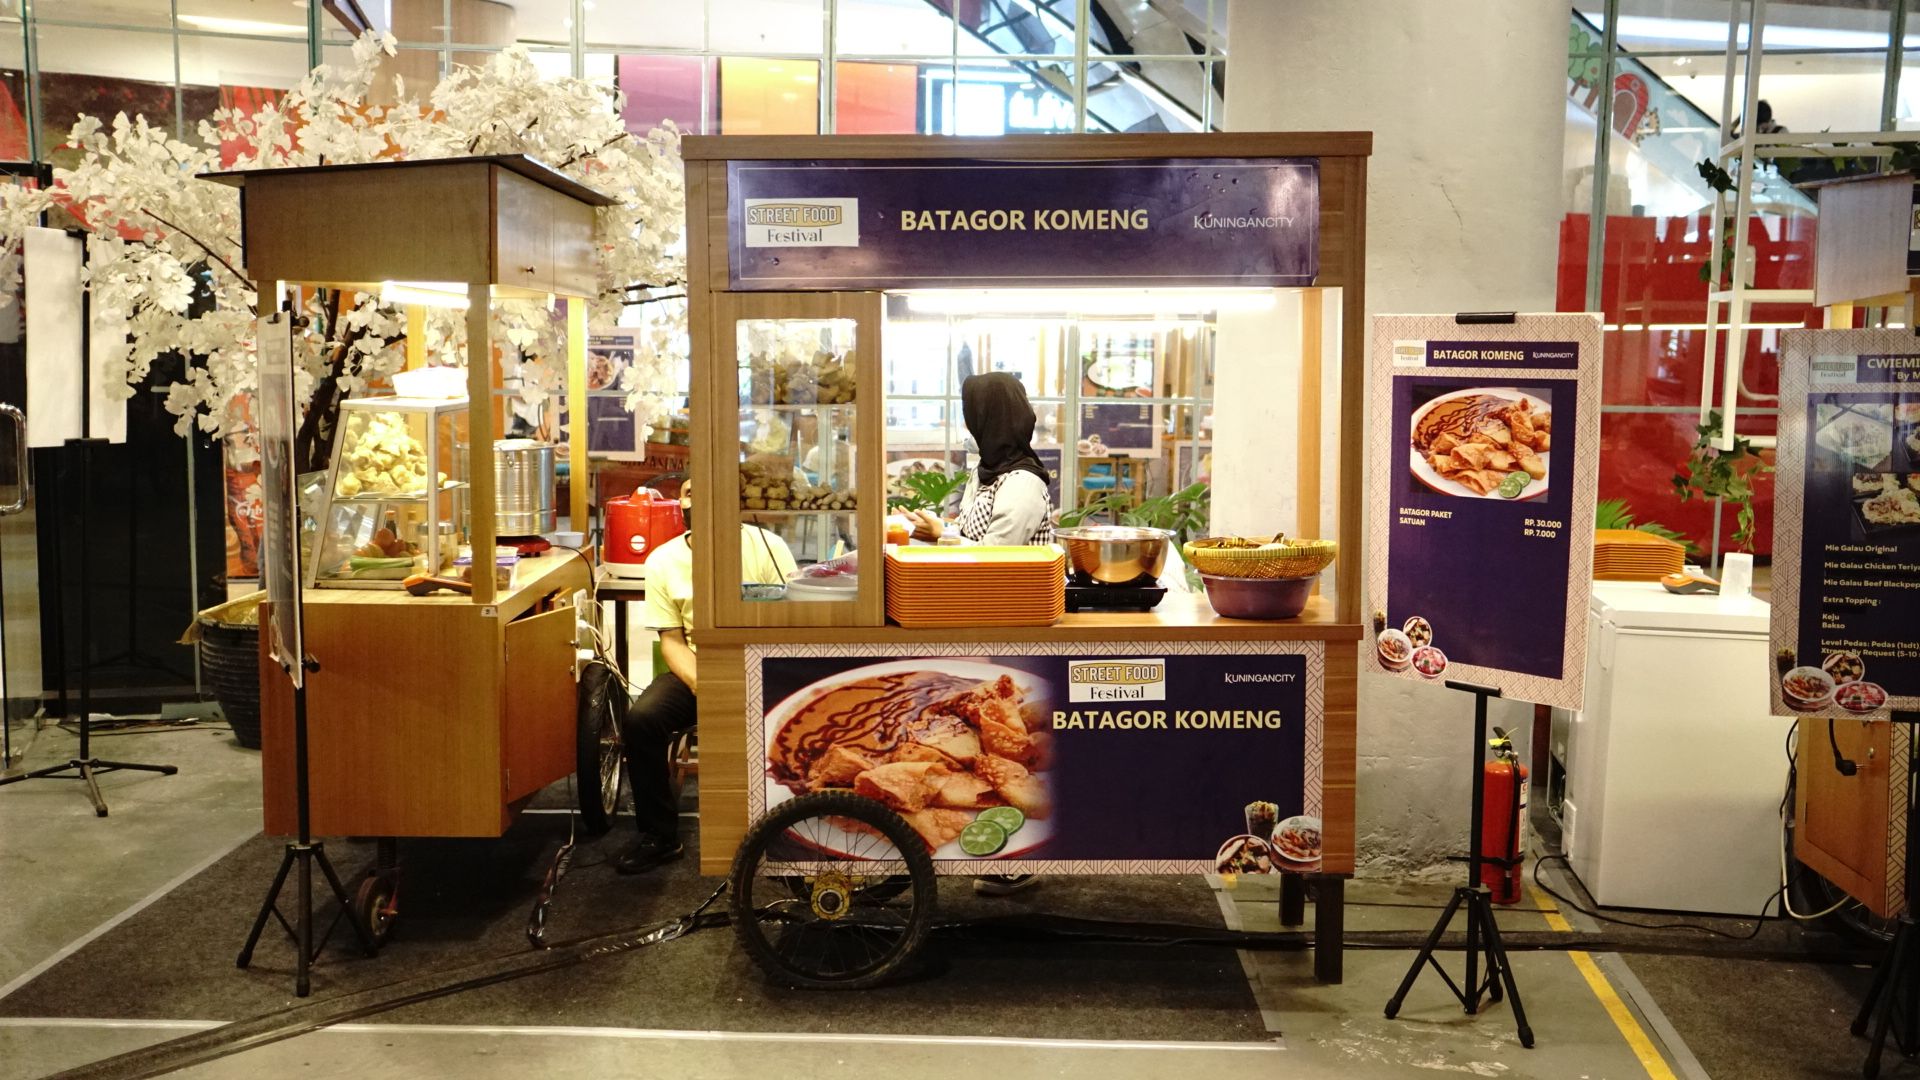 Kuningan City Mempersembahkan Jakarta Kulinary Edition, Hadirkan Kuliner Khas Indonesia Hingga Mancanegara Sepanjang September Hingga November